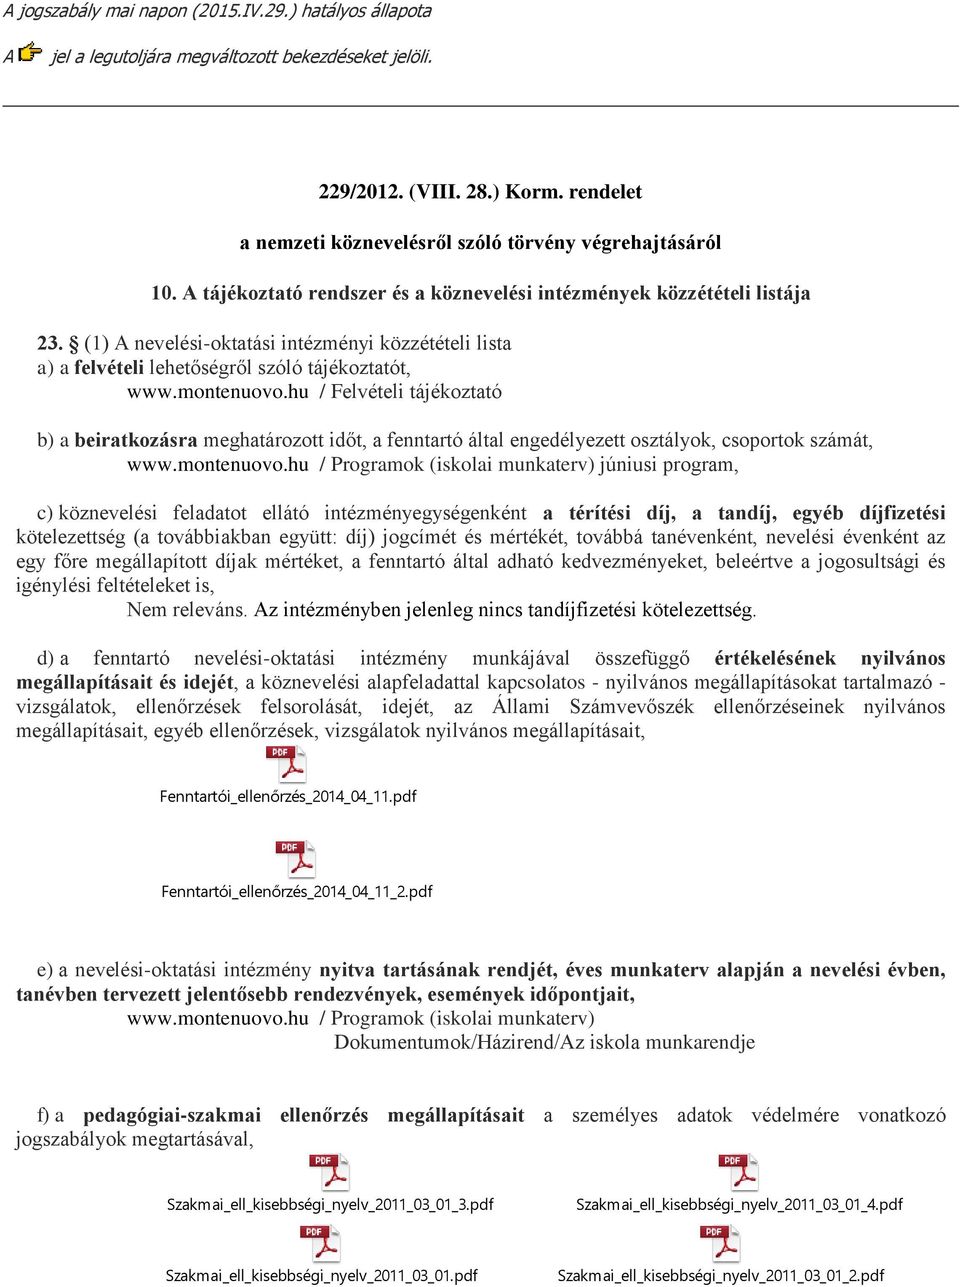 (1) A nevelési-oktatási intézményi közzétételi lista a) a felvételi lehetőségről szóló tájékoztatót, www.montenuovo.